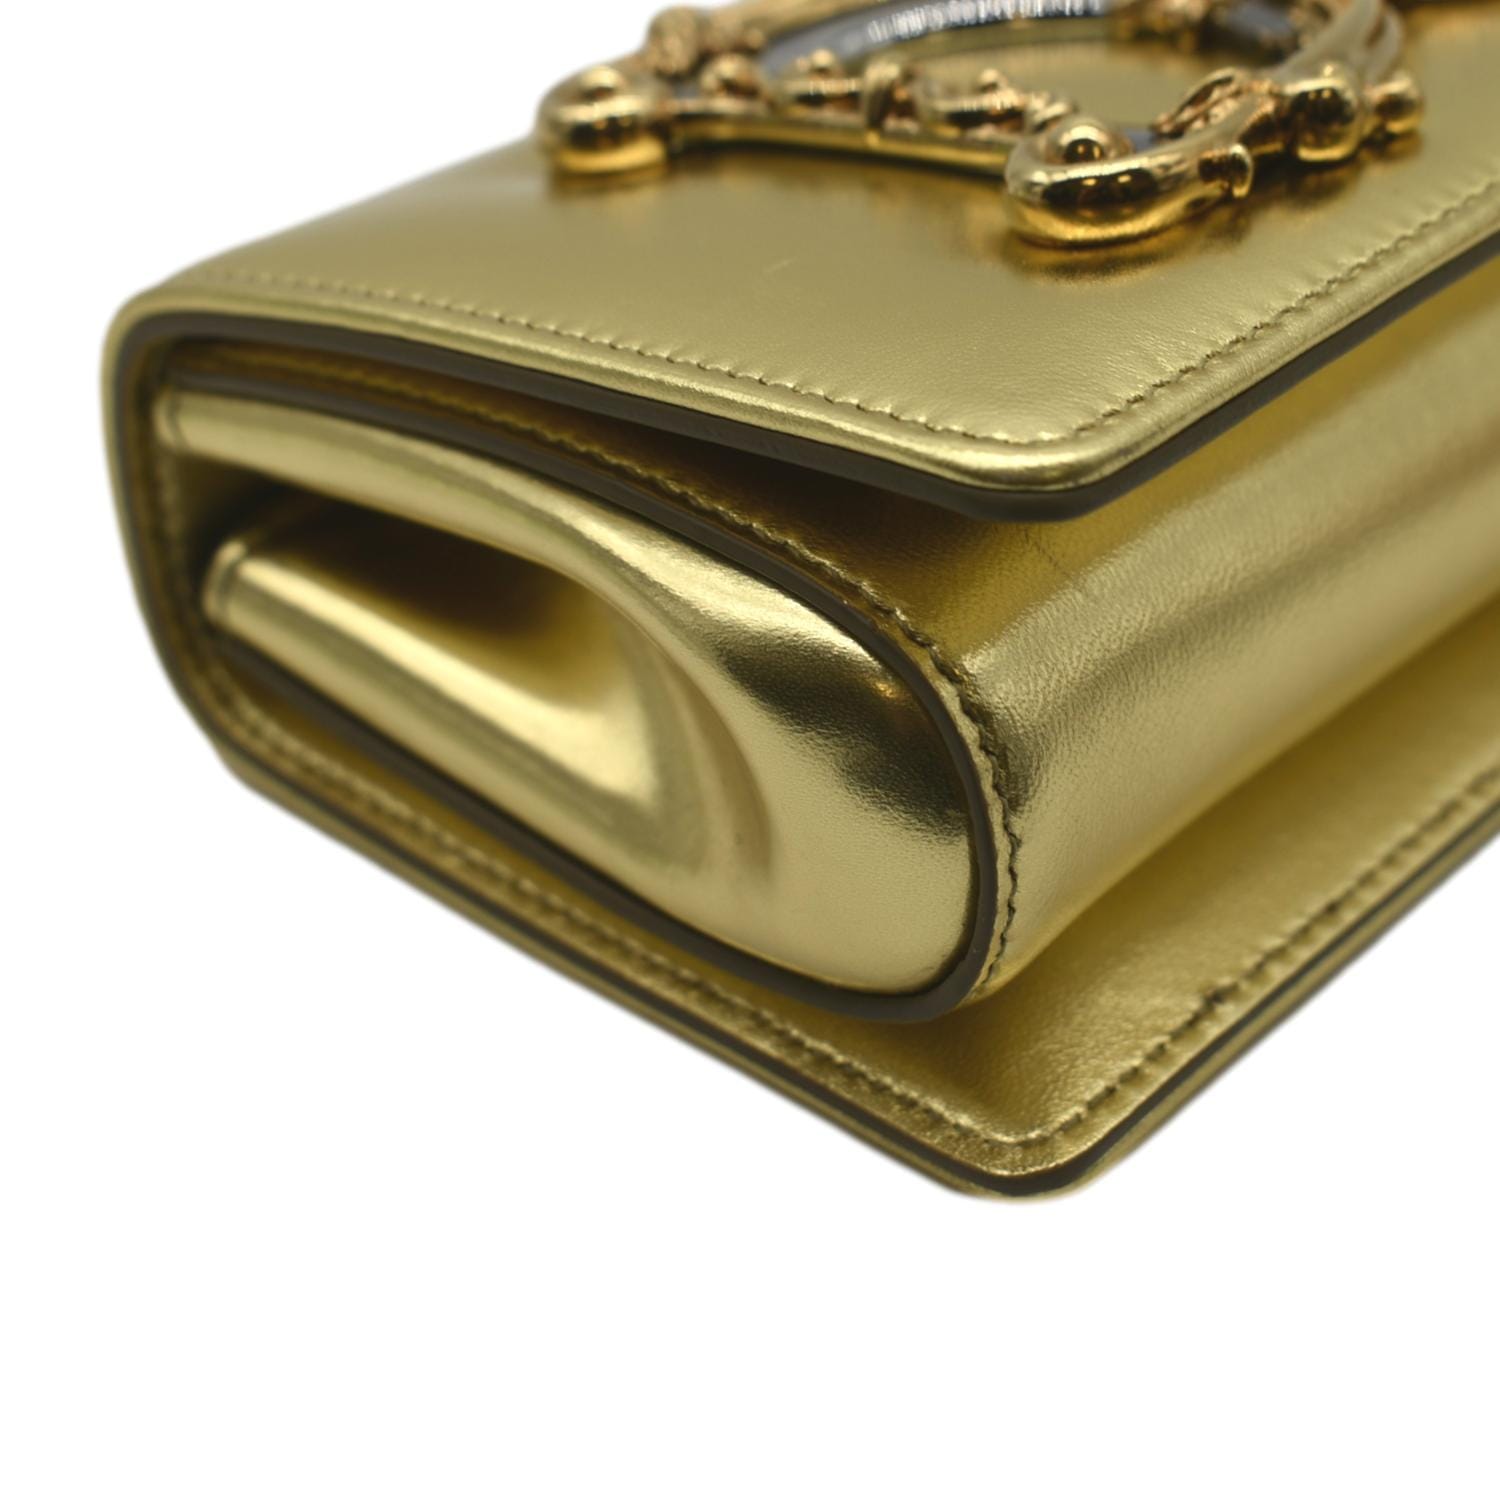 Dolce & Gabbana gold treasure bag